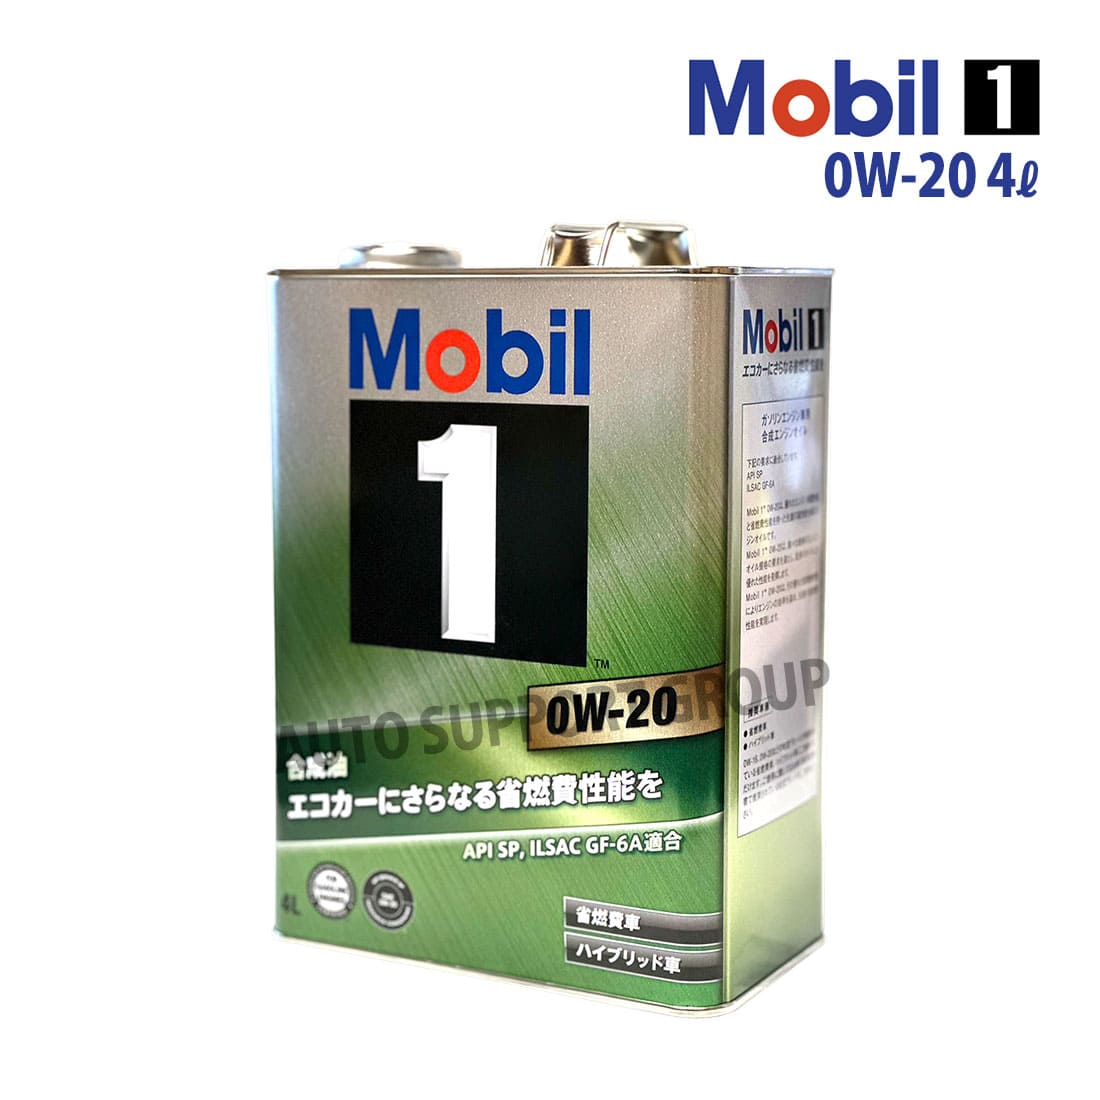 エンジンオイル 0W-20 SP モービル1 Mobil1 4L缶 (4リットル)  :ys-mob1010109-2302-10004:オートサポートグループ 通販 